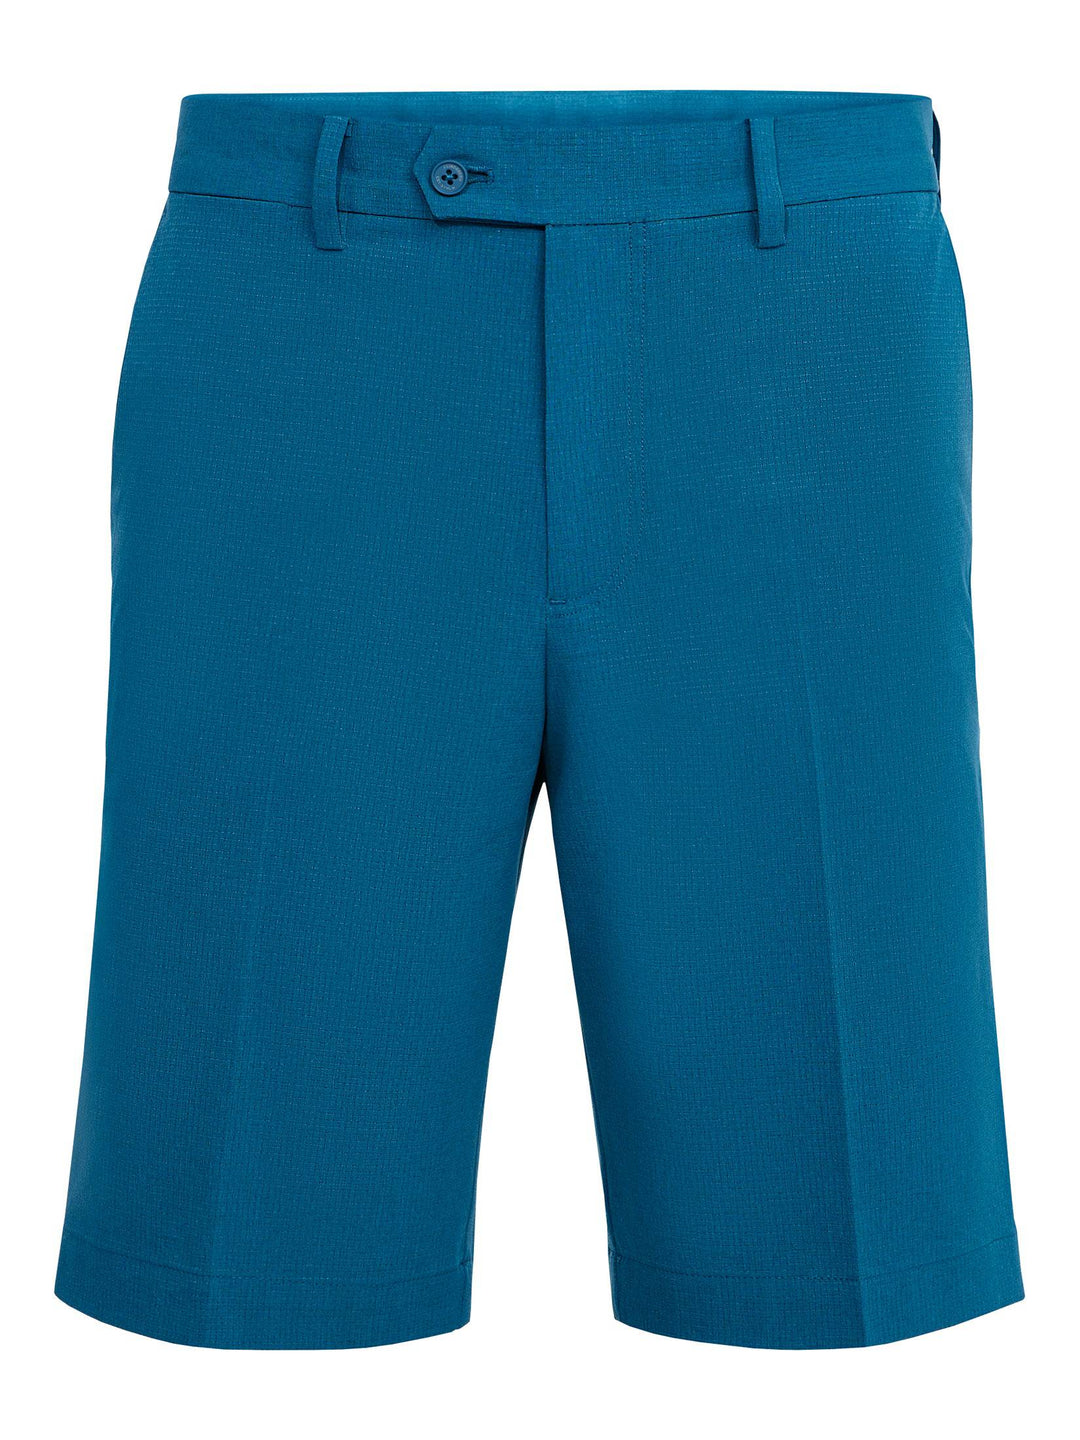 J.Lindeberg Mens Vent Golf Shorts - MOROCCAN BLUE